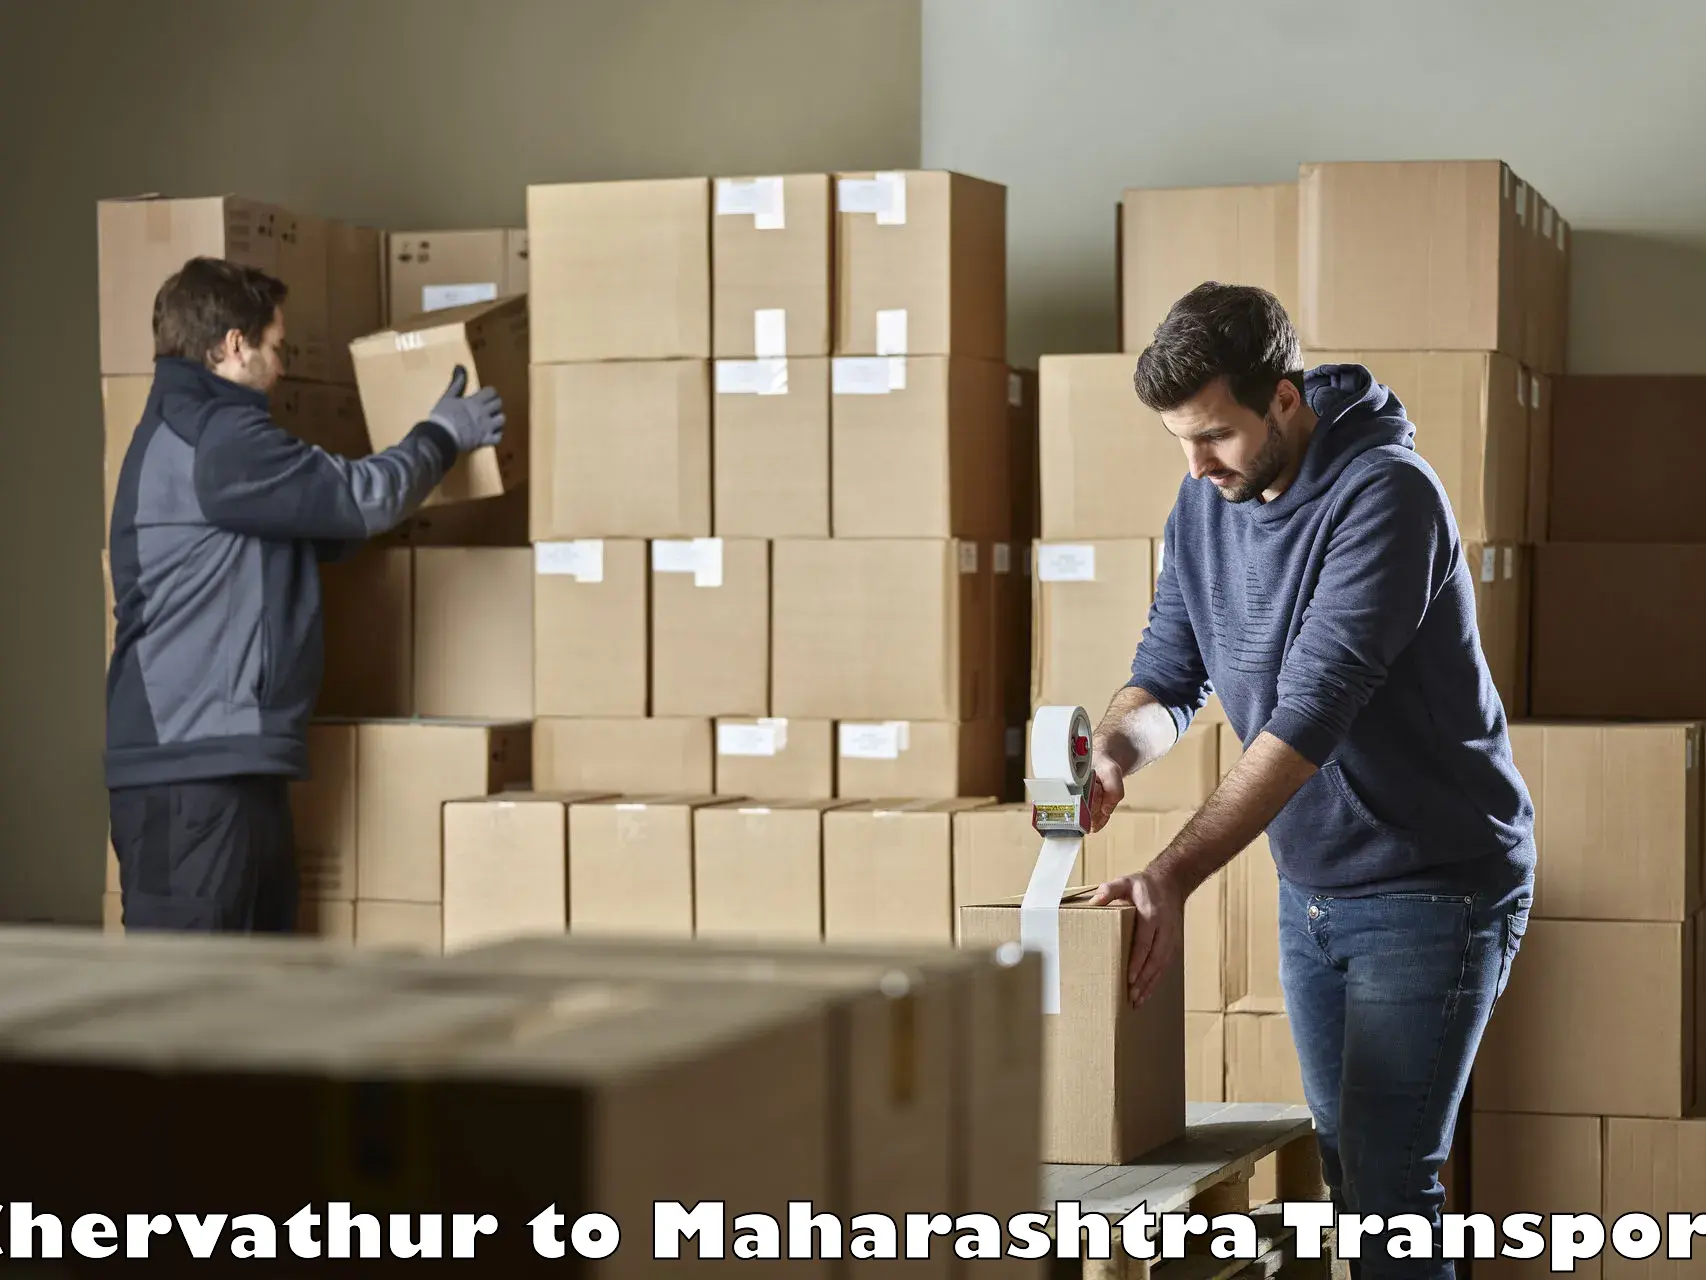 Online transport service Chervathur to Walchandnagar